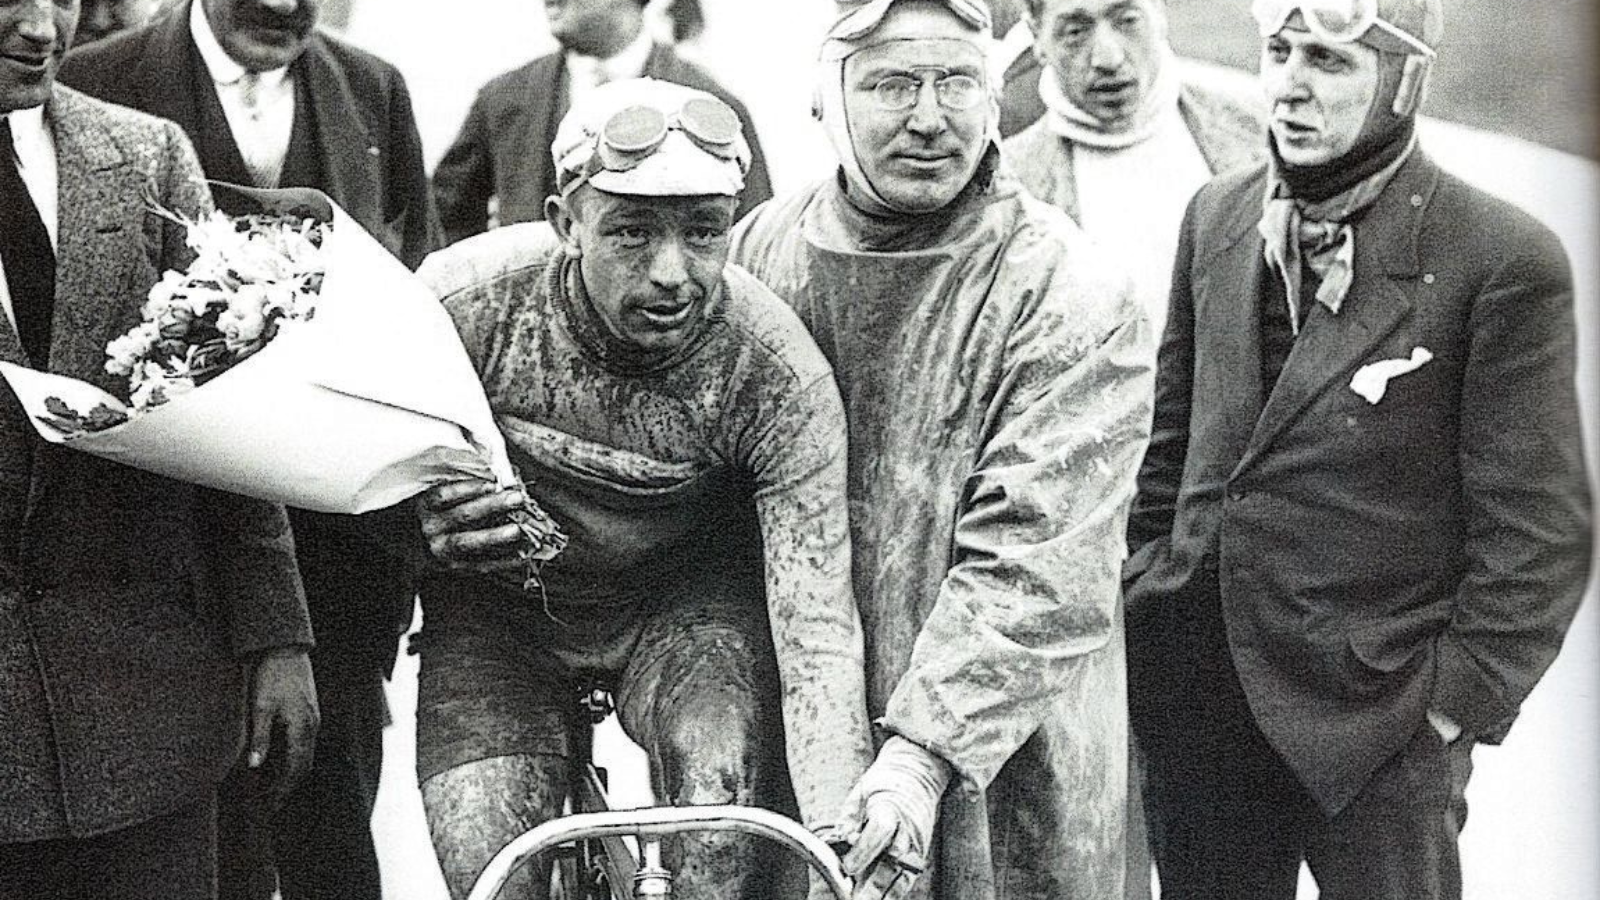 The first Tour of Flanders 1913. Paul Deman winner of the first Ronde van Vlaanderen